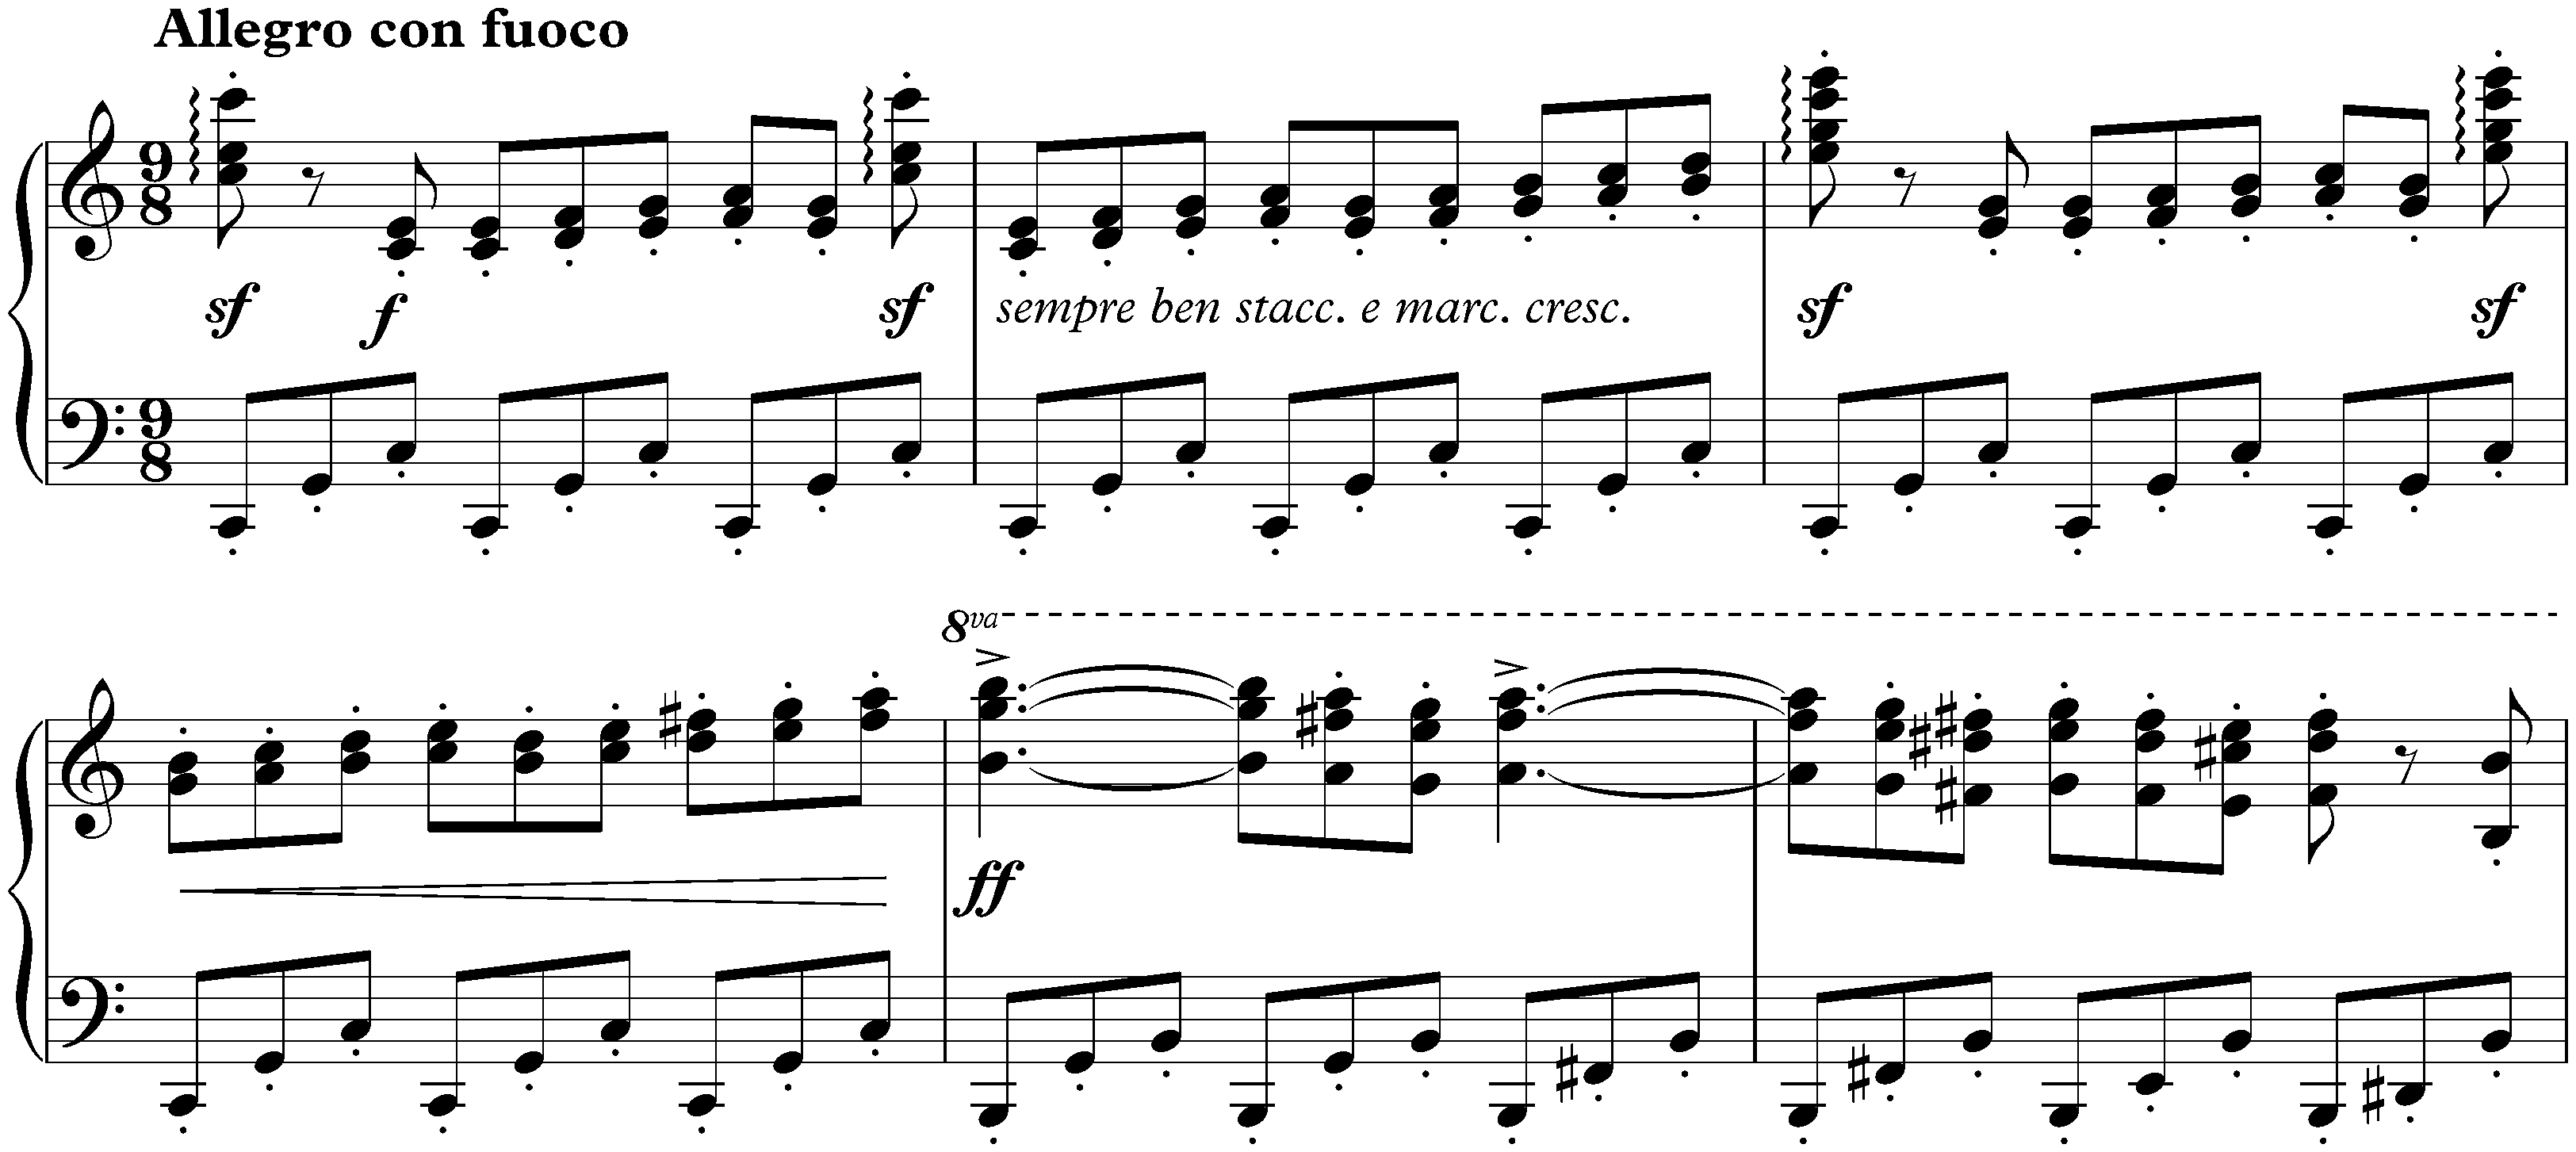 Sonata no. 1 in C major, op. 1; 4. Finale: Allegro con fuoco